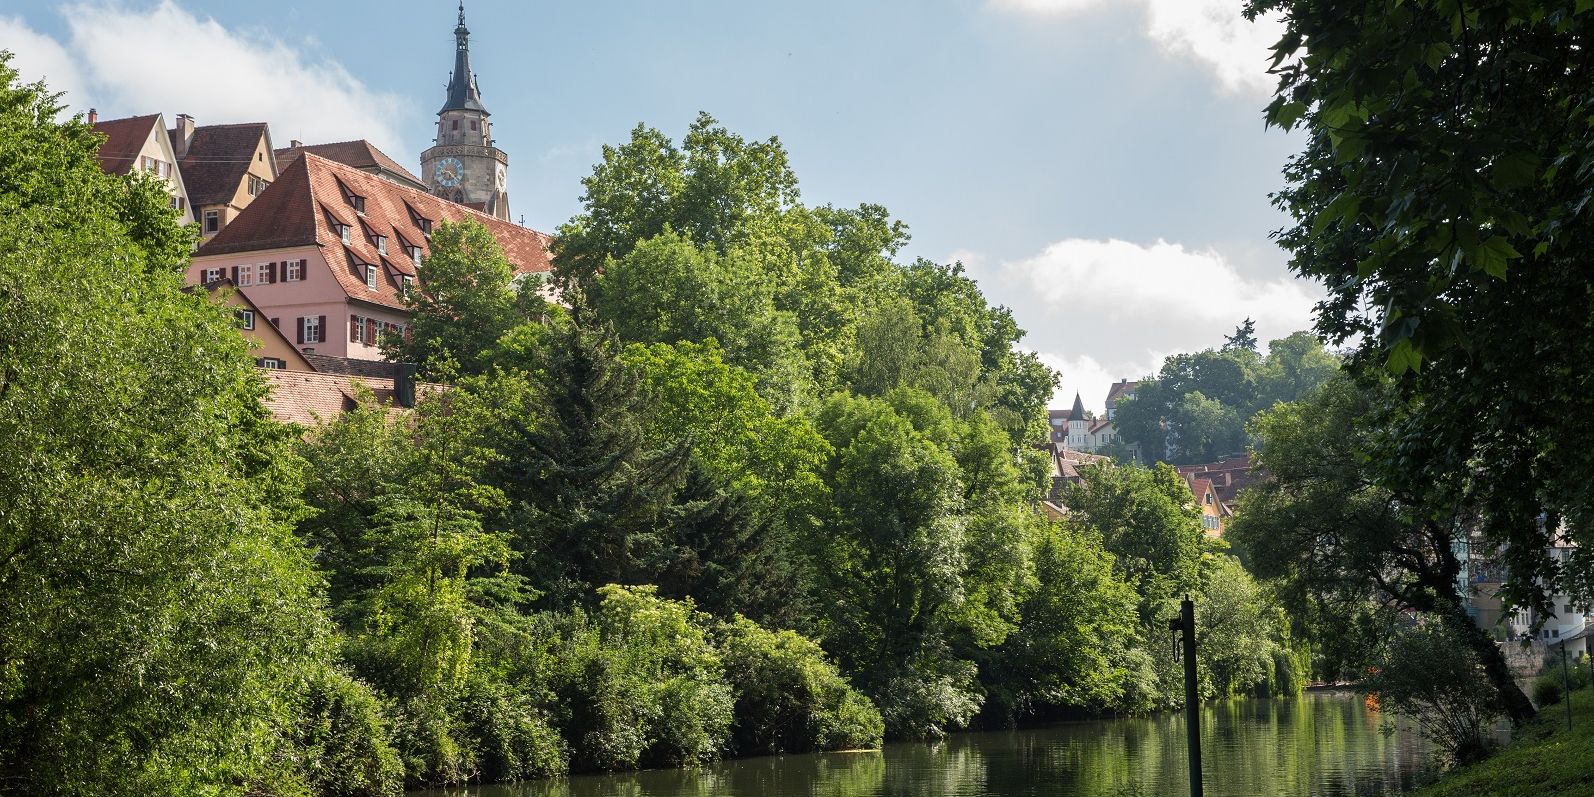 Blick auf den Neckar, im Hintergrund die Stiftskirche